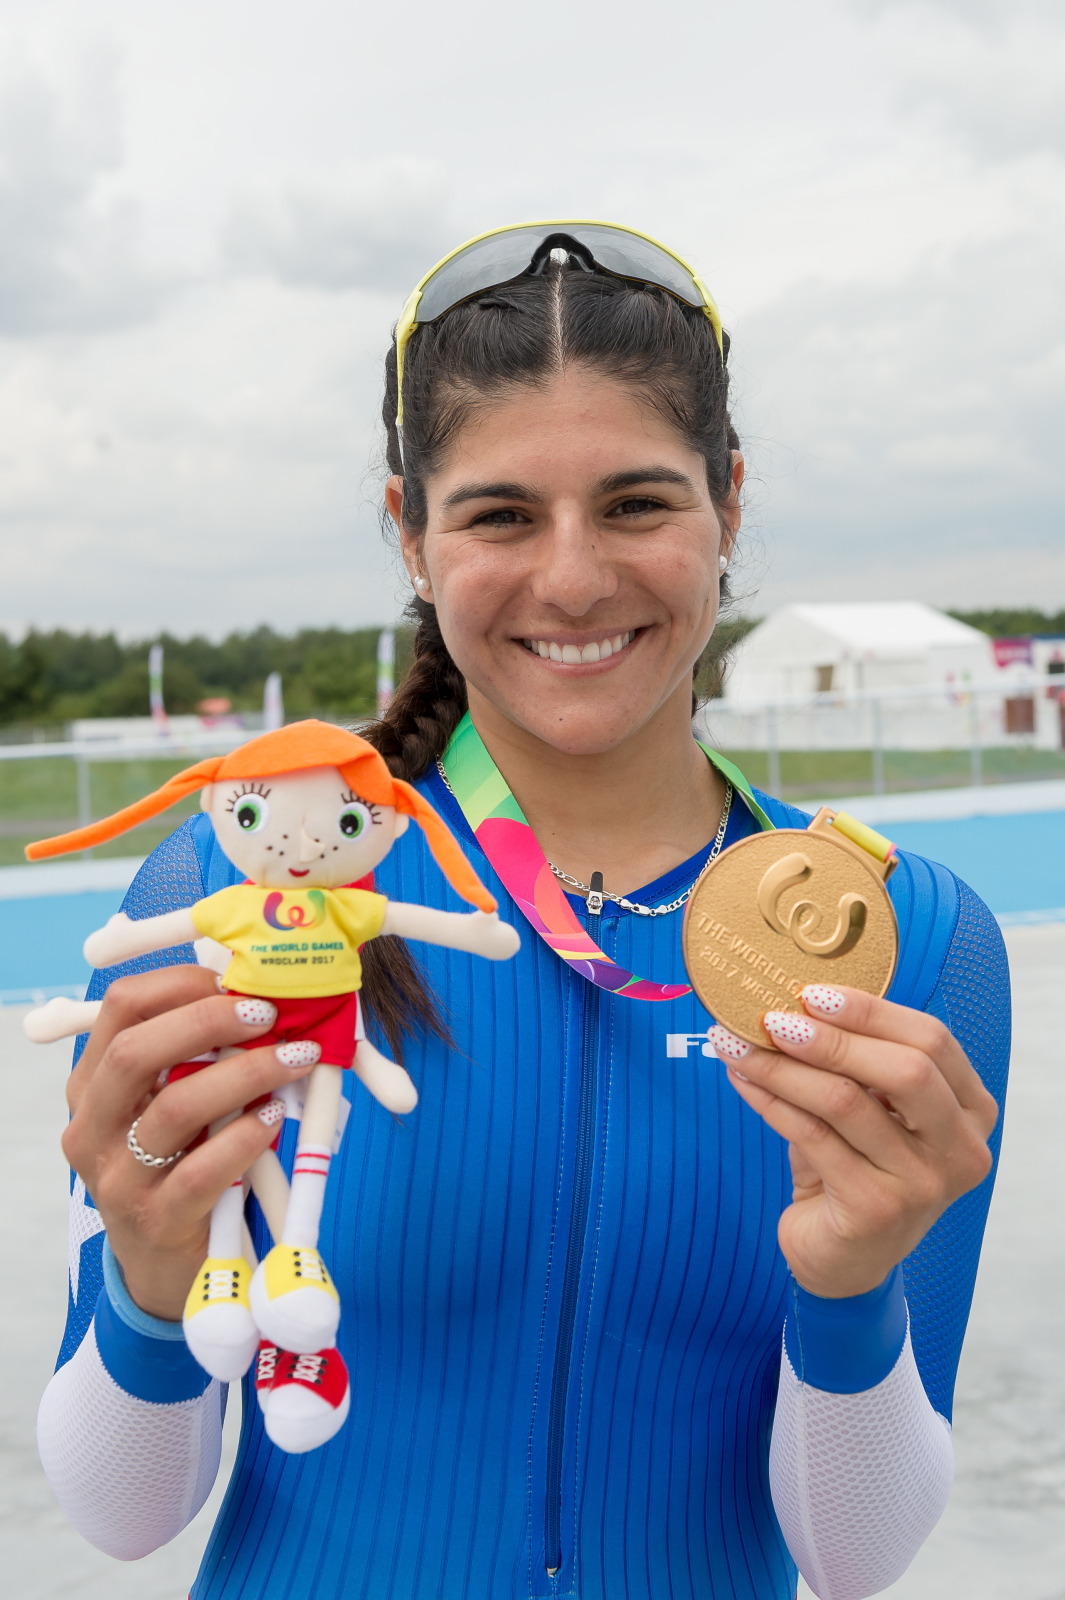 Maria Moya z Chile pozuje do zdjęcia ze złotym medalem, który zdobyła w jaździe szybkiej wrotkarek podczas Światowych Igrzysk Sportów Nieolimpijskich Fot. PAP/Jan Karwowski